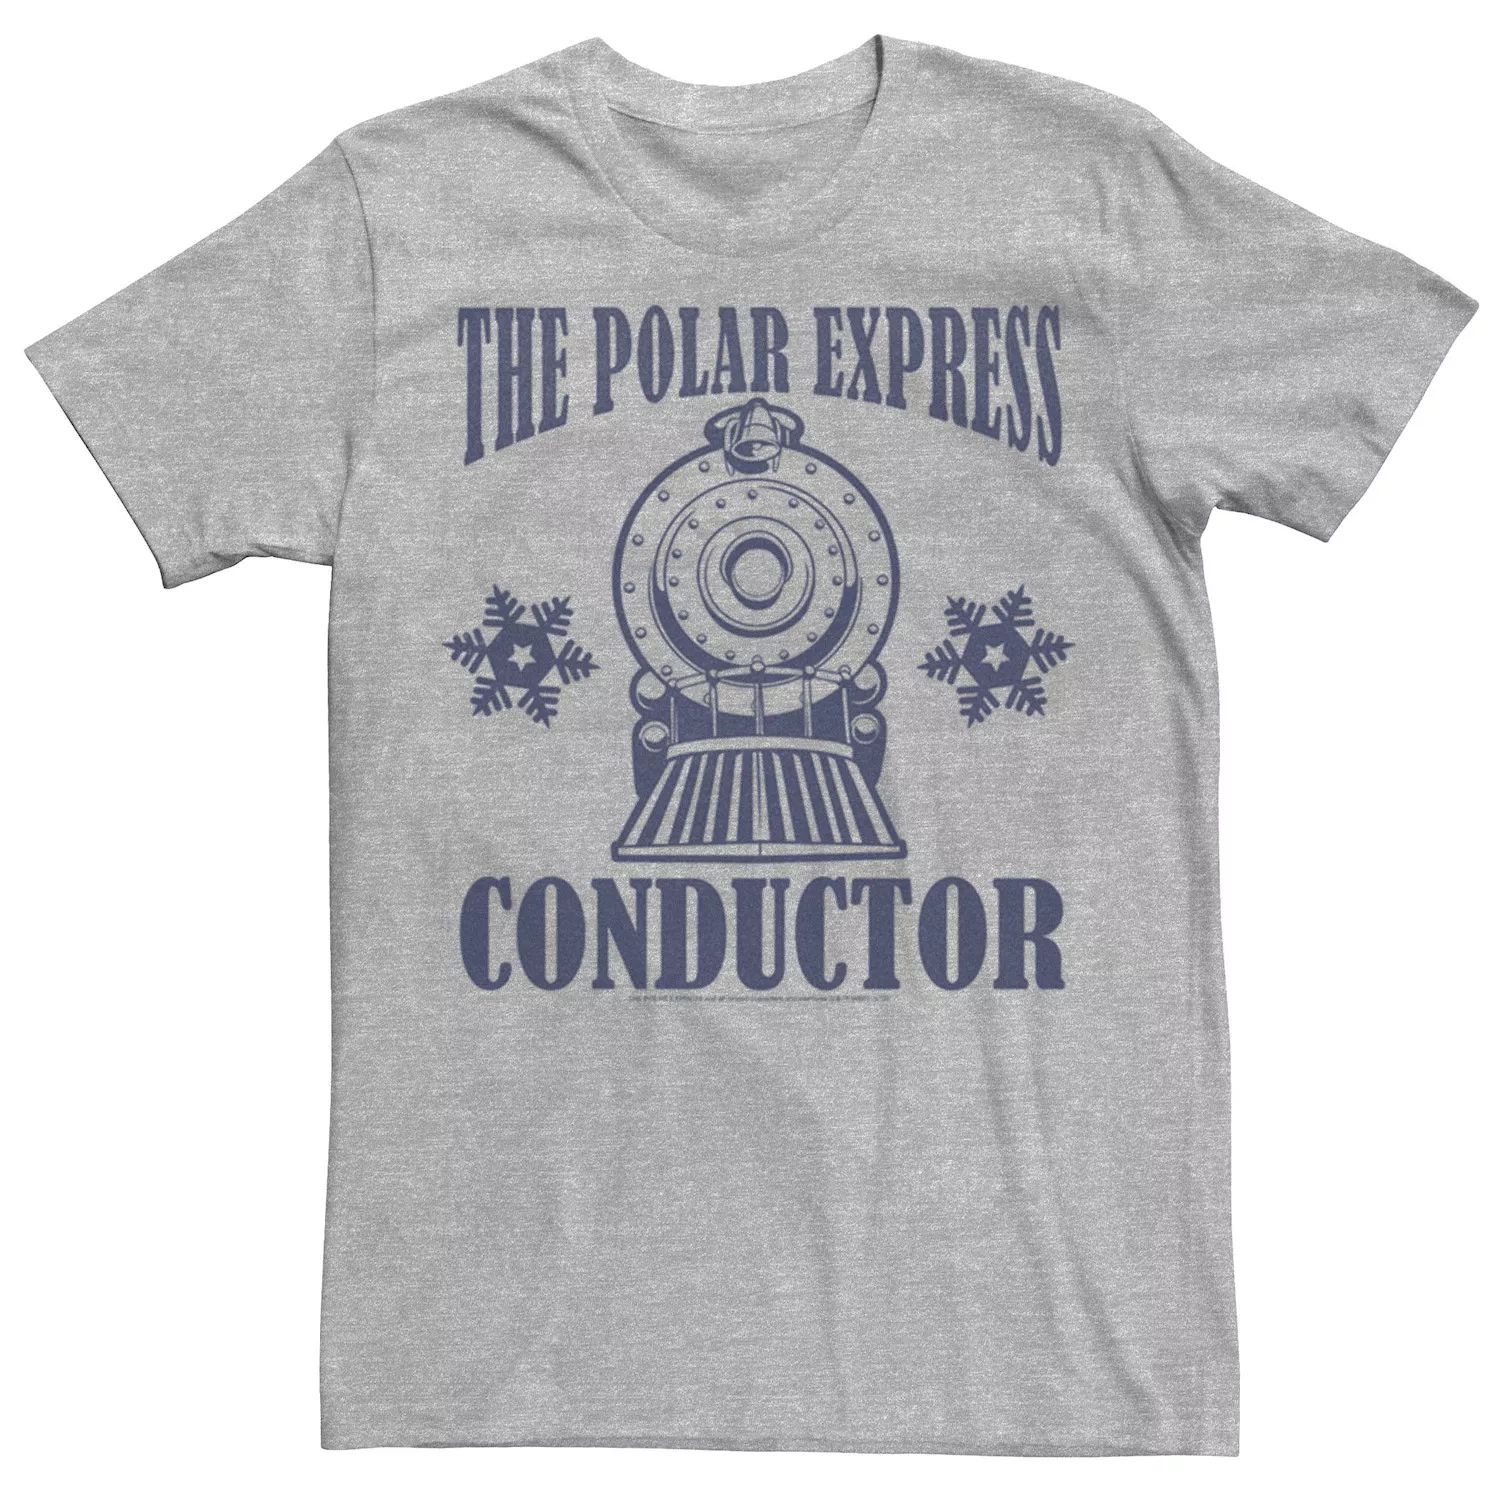 мужская футболка polar express santas sleigh licensed character Мужская футболка Polar Express Conductor Licensed Character